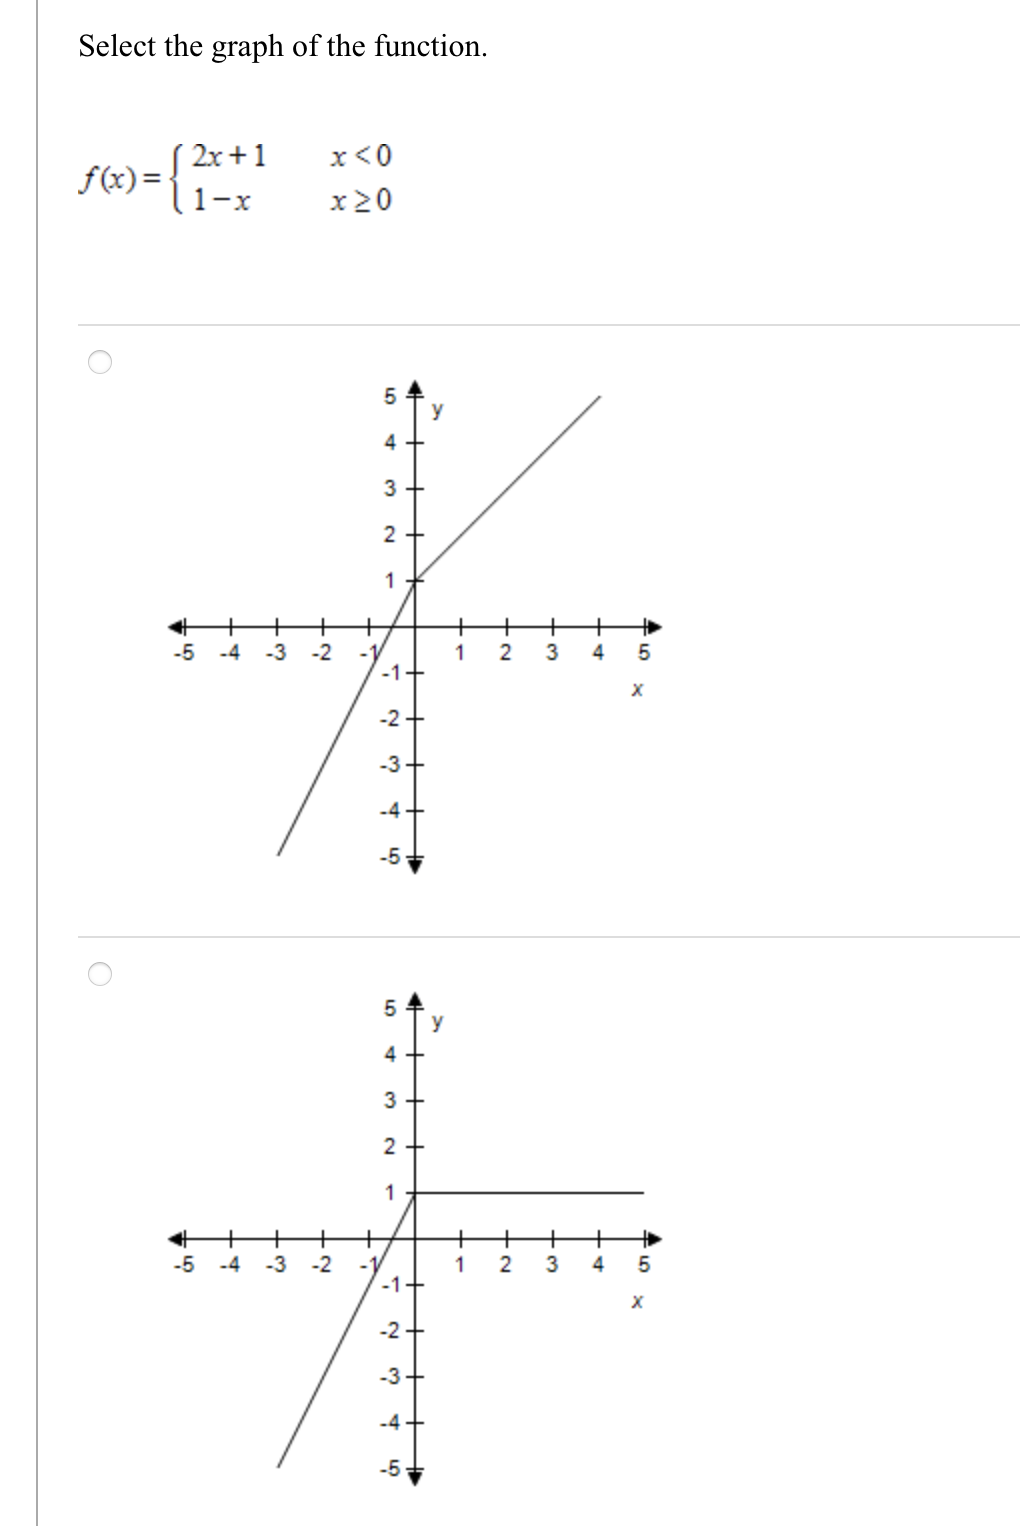 Select the graph of the function.
( 2x+1
f(x) =
l1-x
x<0
x20
y
3
2 +
1
+
+
+
-3
-2
+
+
+
+
2
3
-5
-4
-1
1
-1+
-2
-3
-4
-5
5
y
1
+
2
-4
-3
-2
1
3
4
5
-1
-2
-3+
-4
-5
